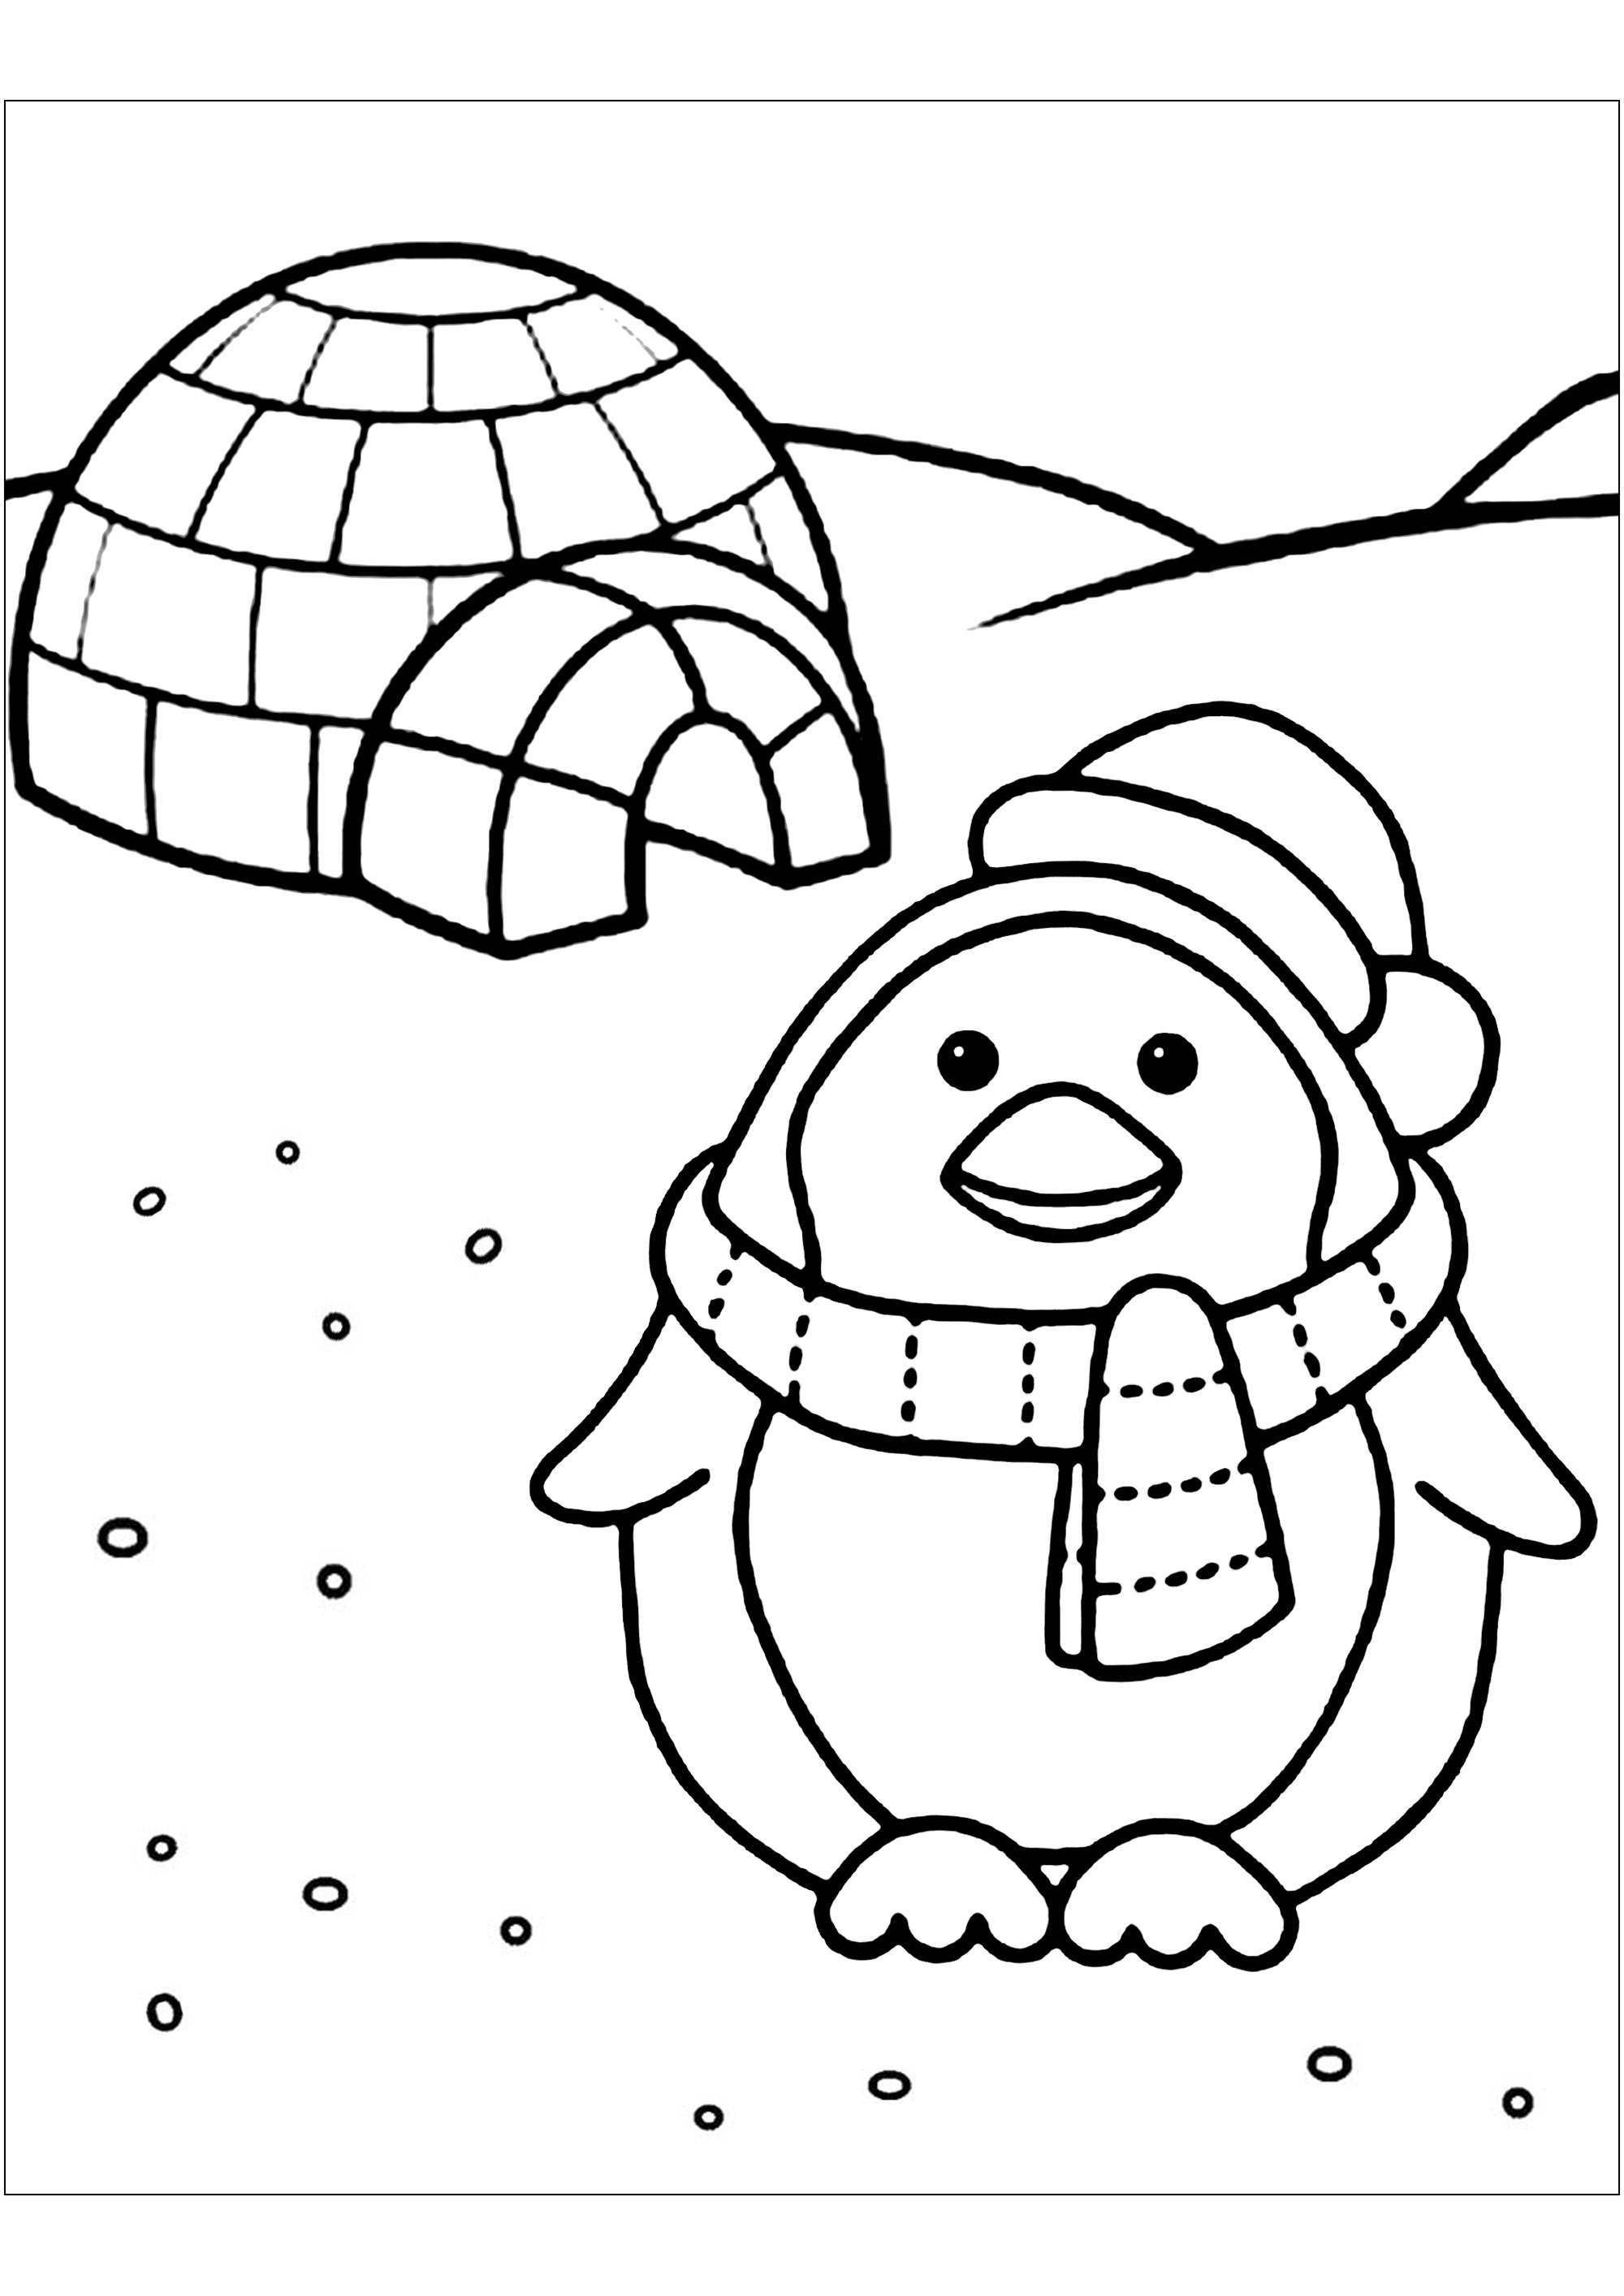 Pintura simples de um pinguim e do seu pequeno iglu. À volta deste pequeno pinguim com um cachecol há flocos de neve, que também podes colorir.